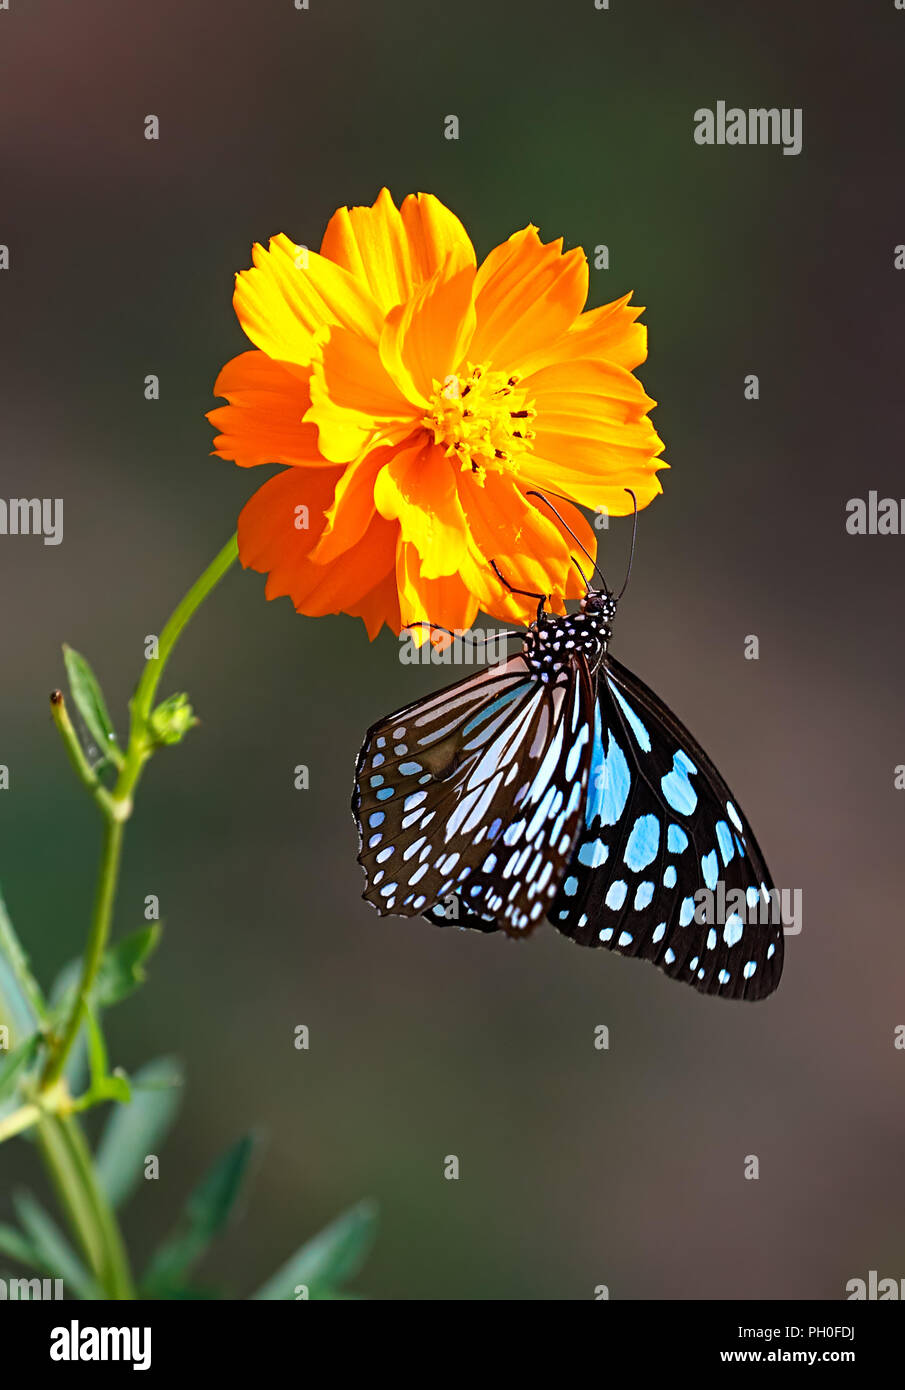 Tigre azul o mariposas Danaid Tirumala limniace colgando de un cosmos doble flor de naranja. Foto de stock